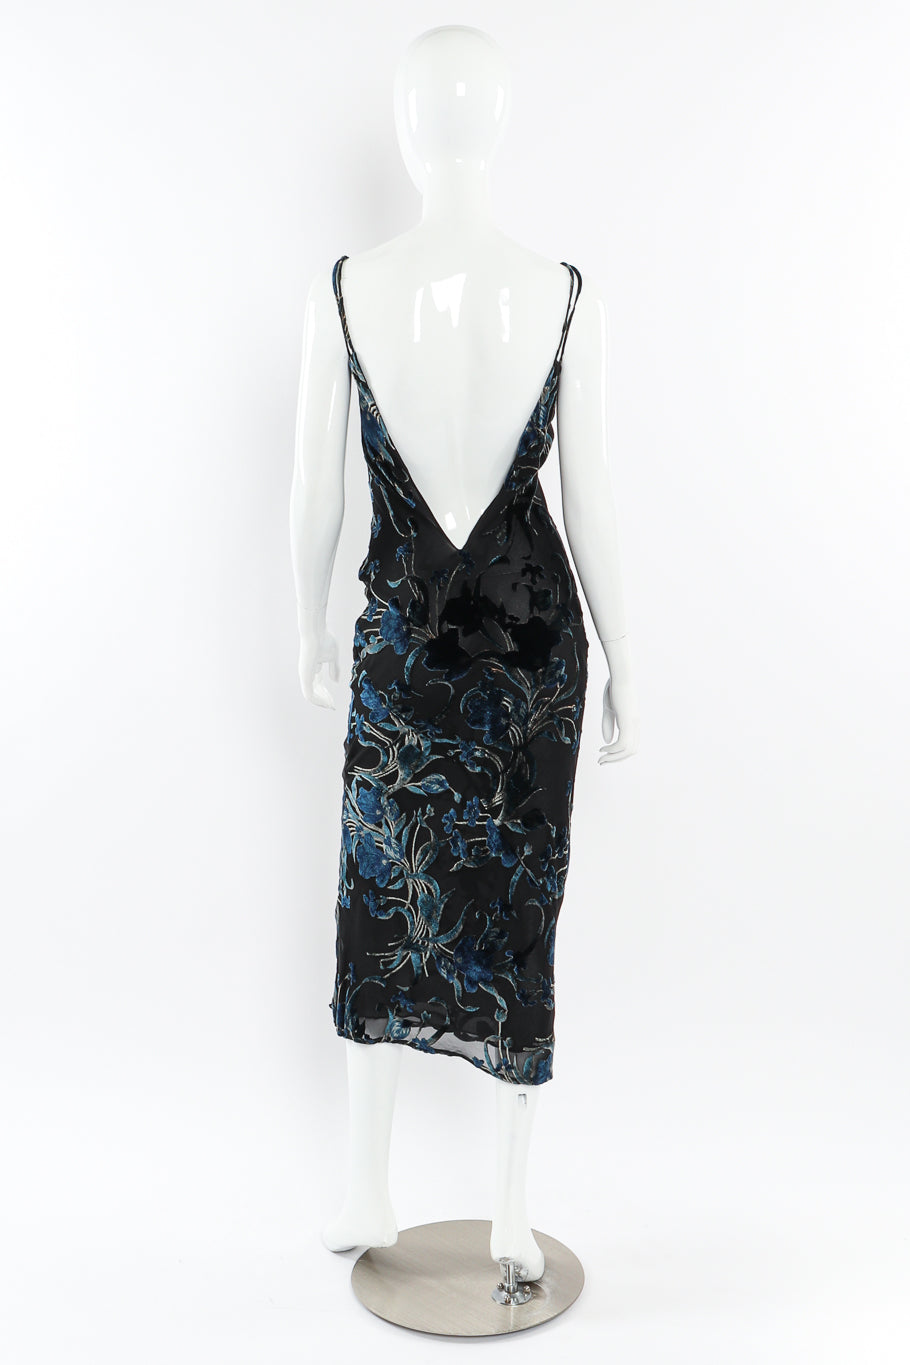 Velvet burnout slip dress by Richard Tyler on mannequin back @recessla